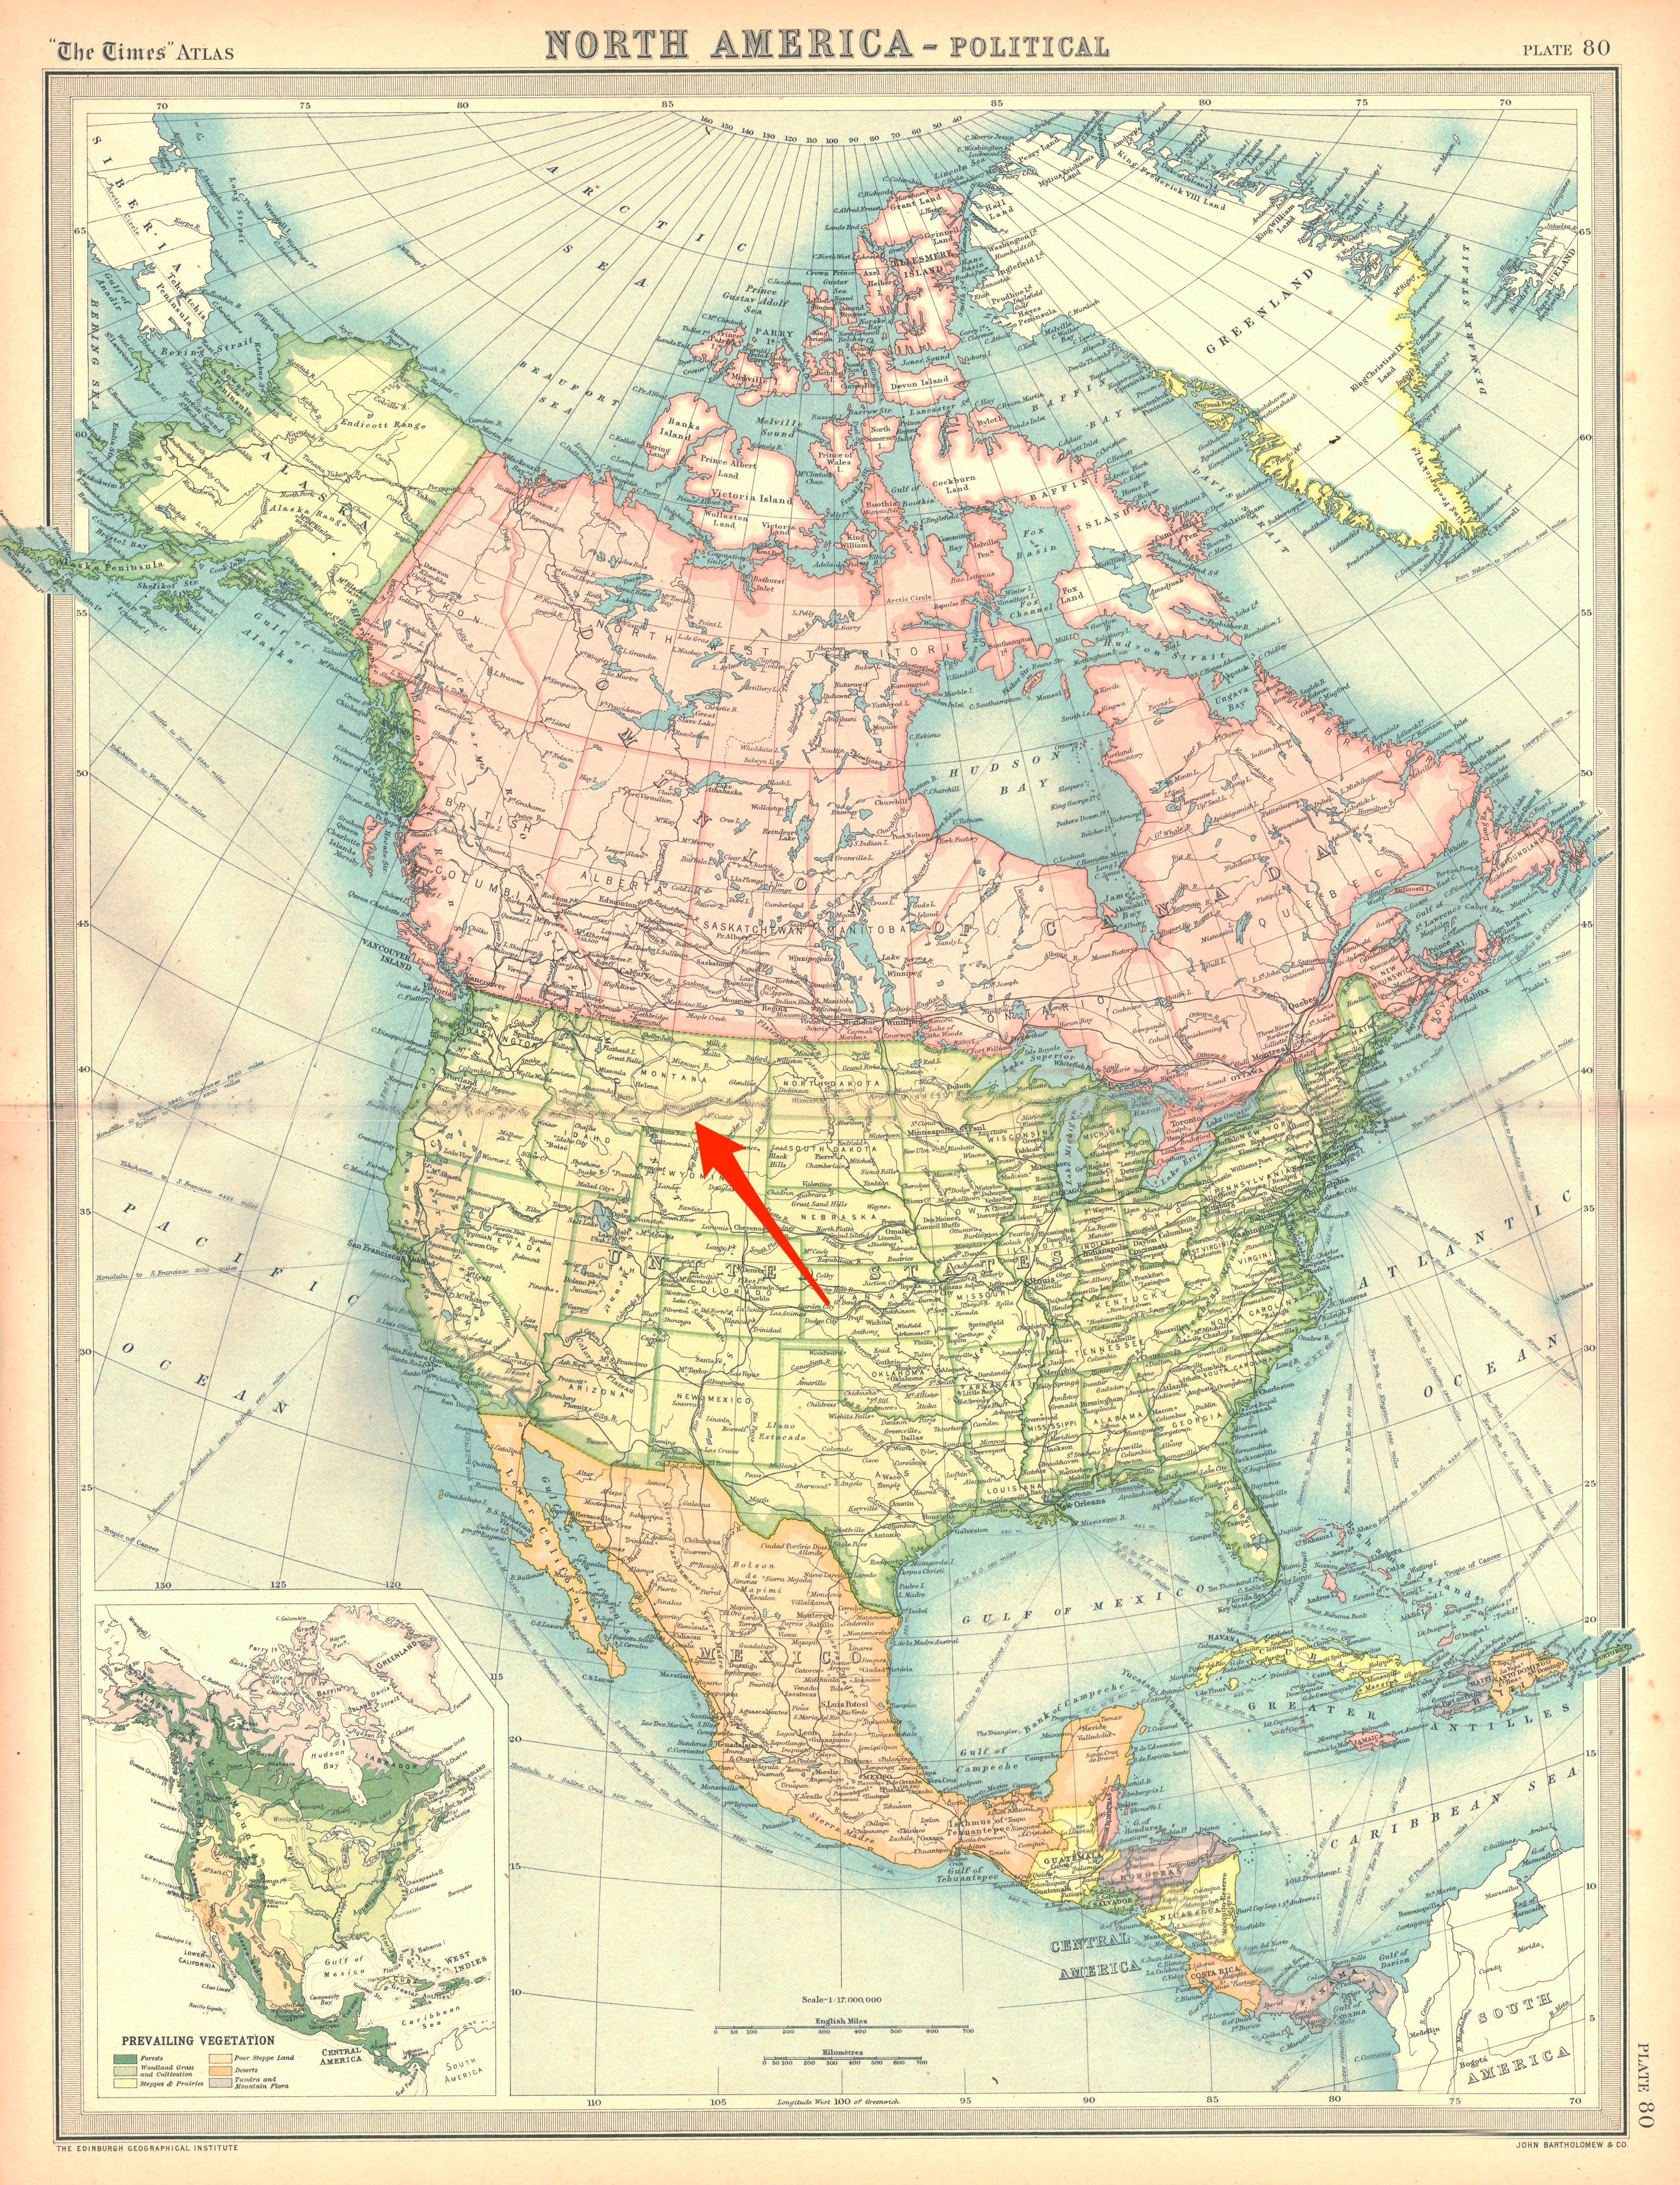 Eine Karte von Nordamerika mit Pfeilen, die auf Billings, Montana, zeigen, wo der chinesische Überwachungsballon schwebend gesehen wurde.